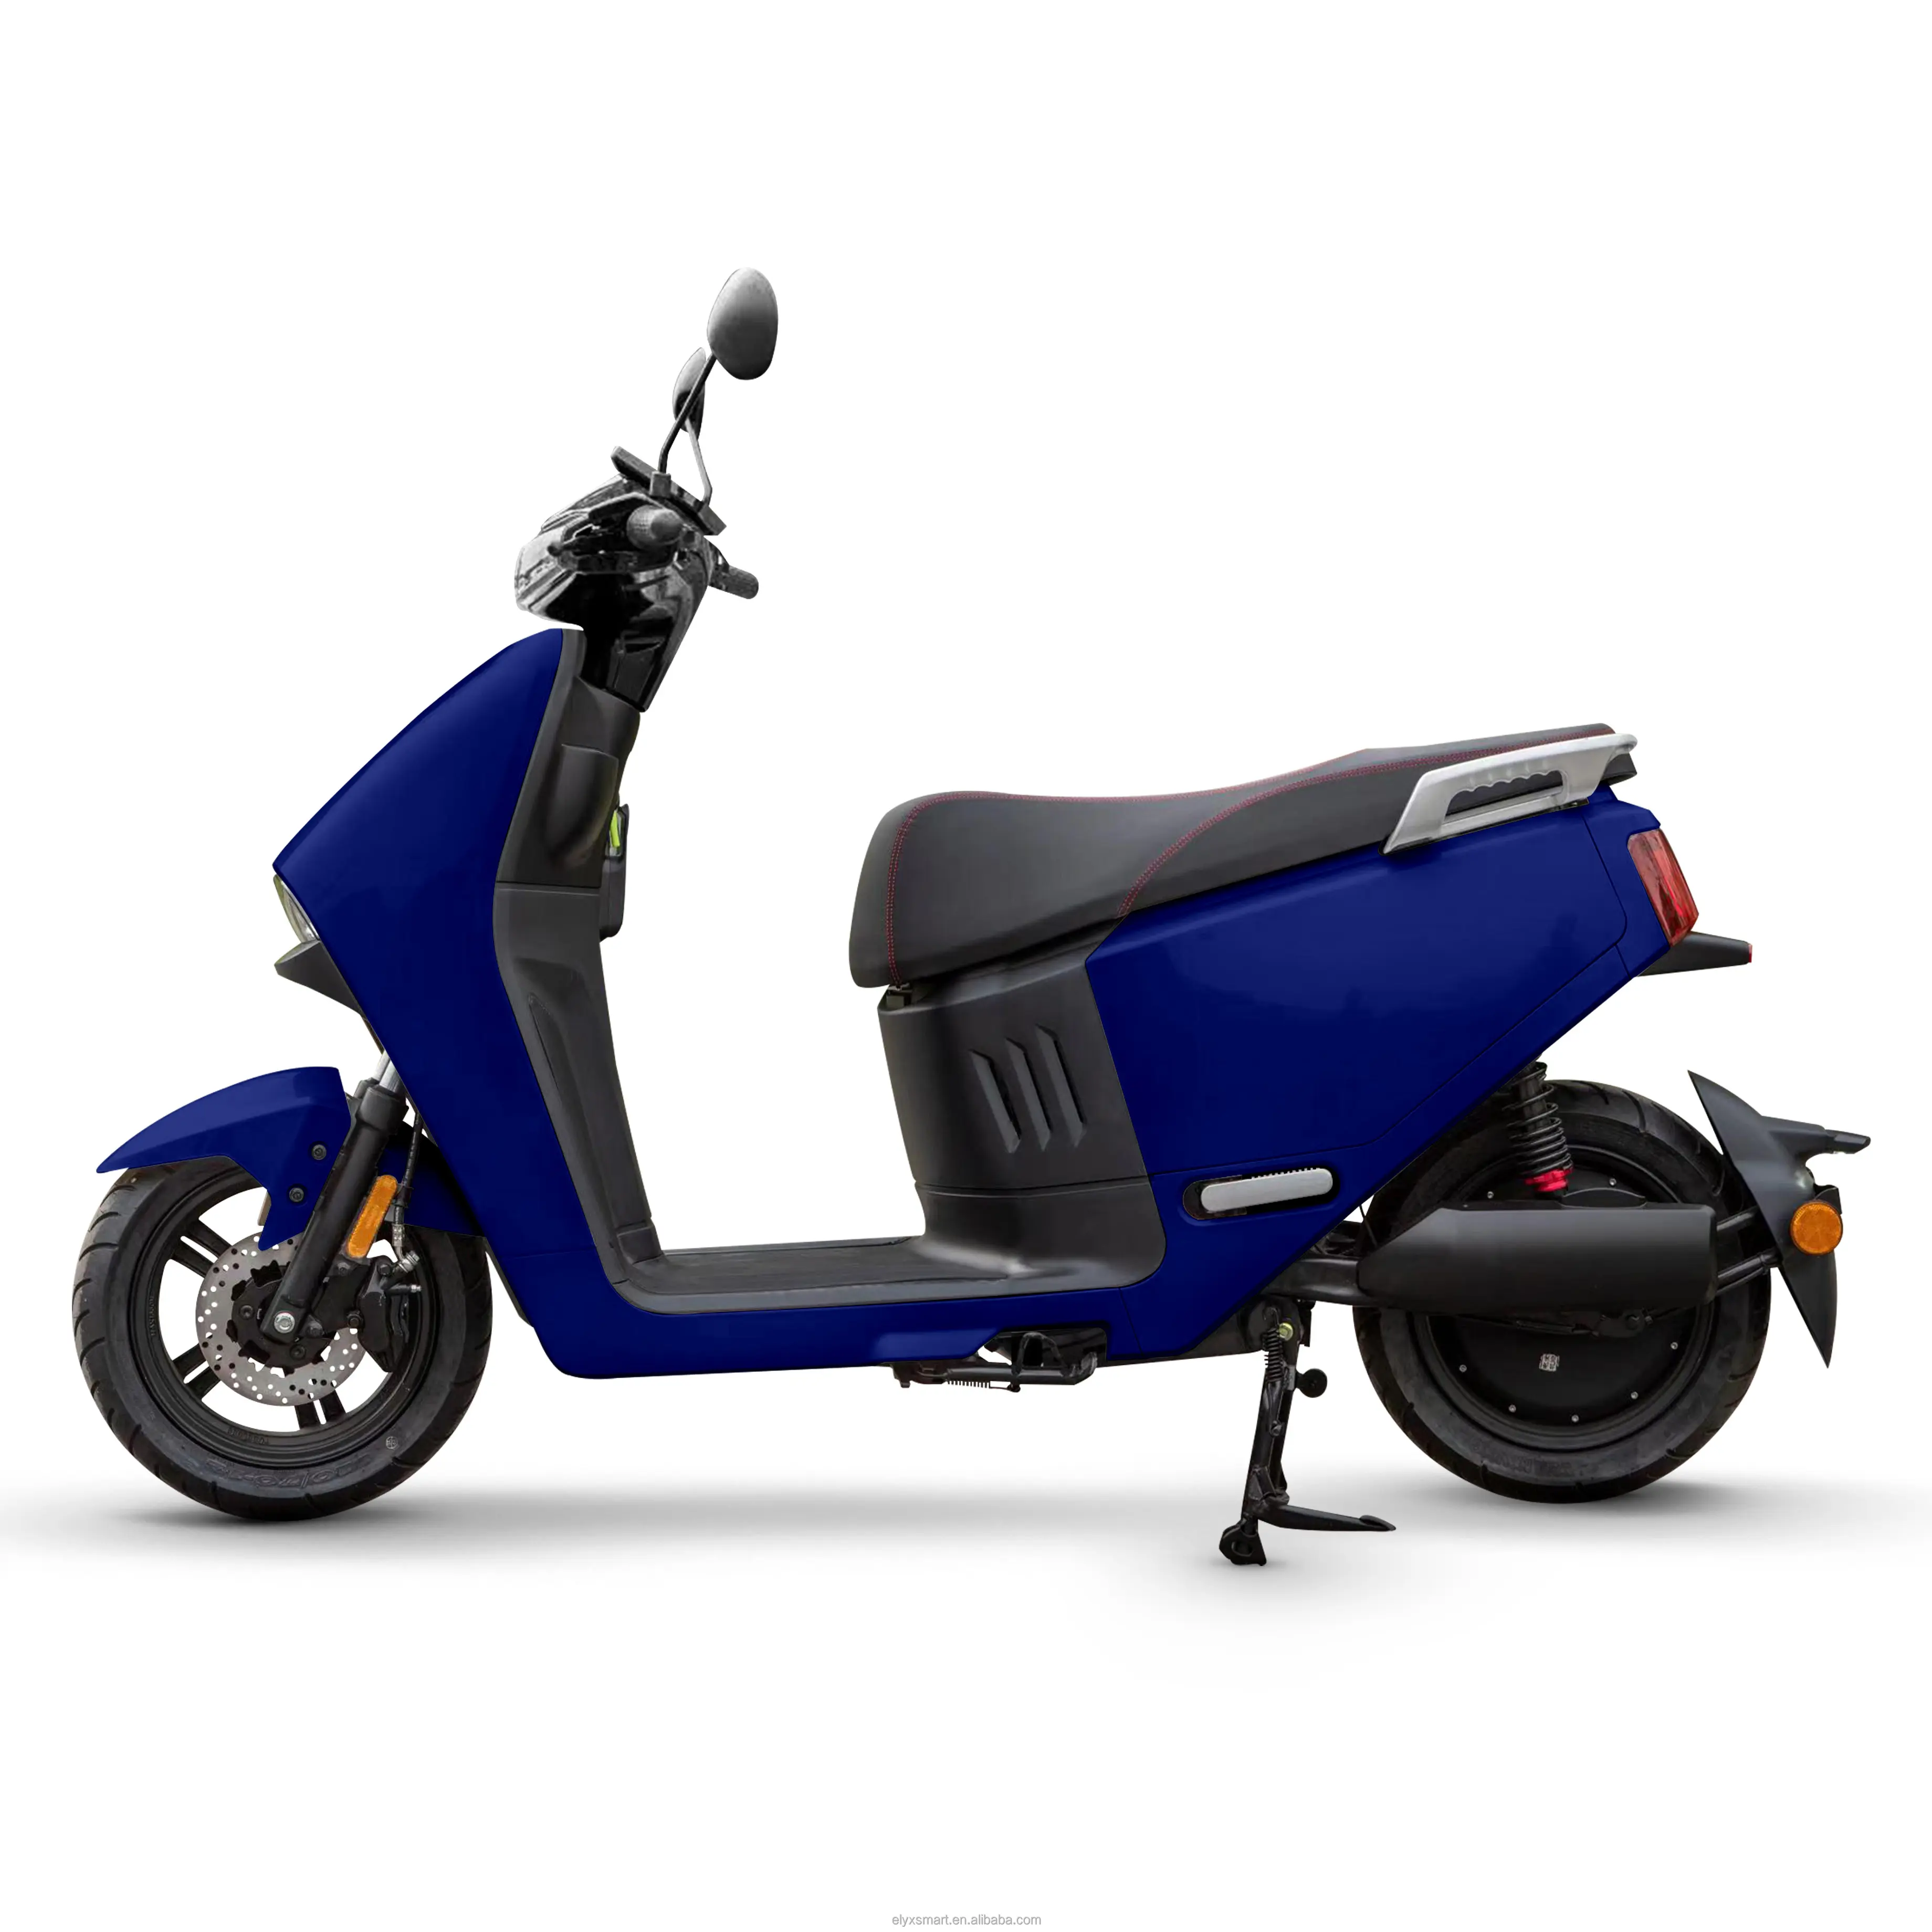 RS-480 30 А · ч большой мощности современный стиль бесщеточный двигатель литиевая батарея электрический мотоцикл скутеры для взрослых